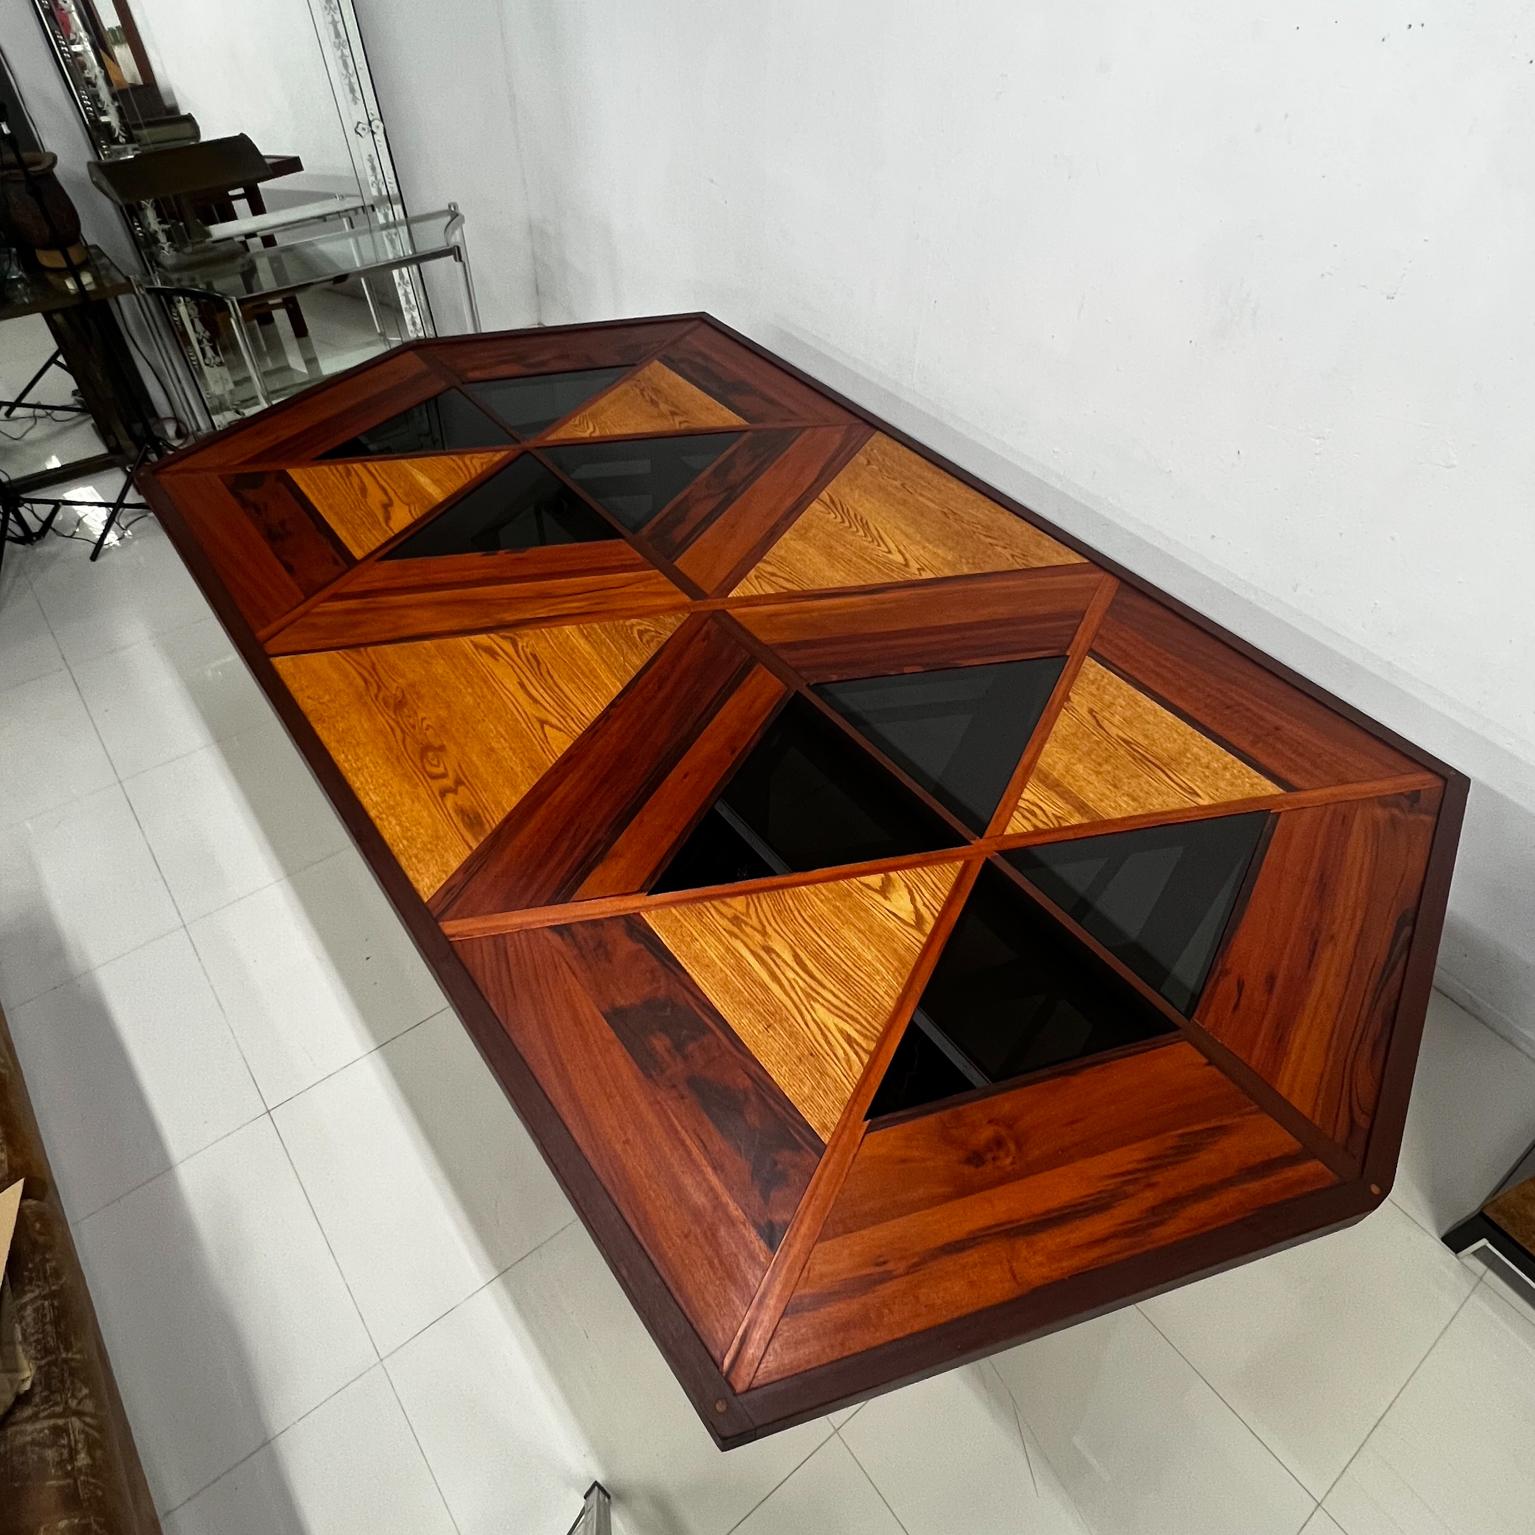 1960s Modernist Custom Design Dining Table Solid Wood Marquetry 
Incrustations de bois élaborées avec un motif géométrique.
120 x 66 p x 32,5 haut dégagement pour les genoux 30,25
Présentation vintage originale d'occasion.
Se référer aux images